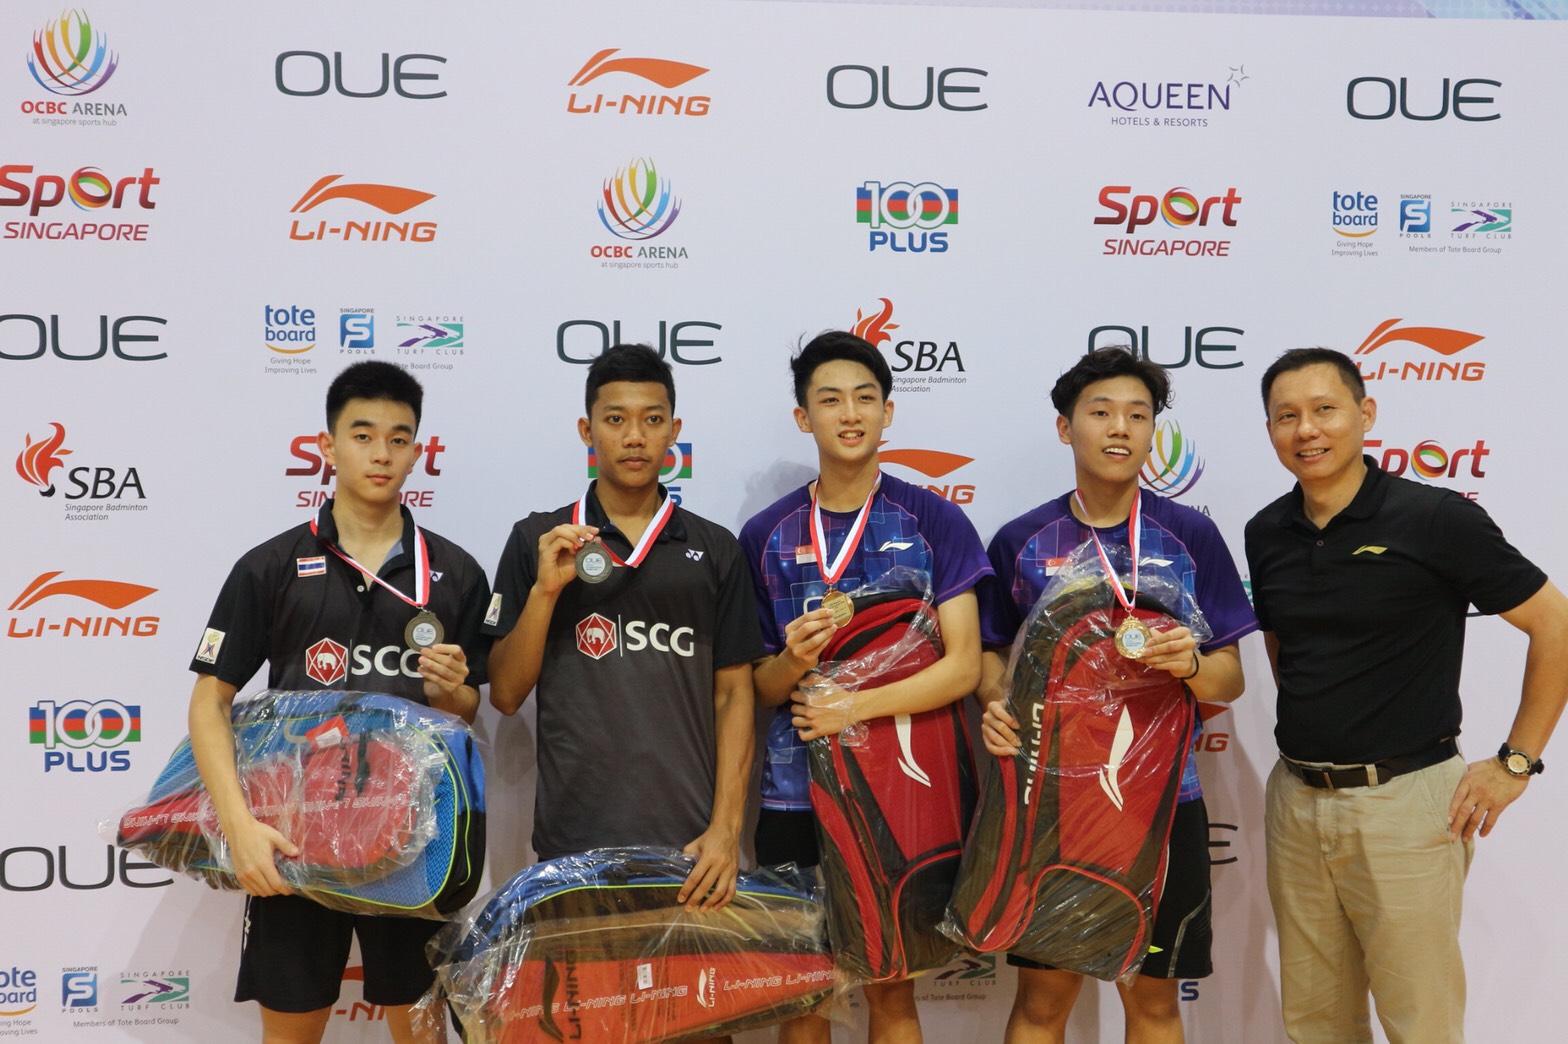 ไทยคว้าแชมป์ OUE Singapore Youth International Series 2017